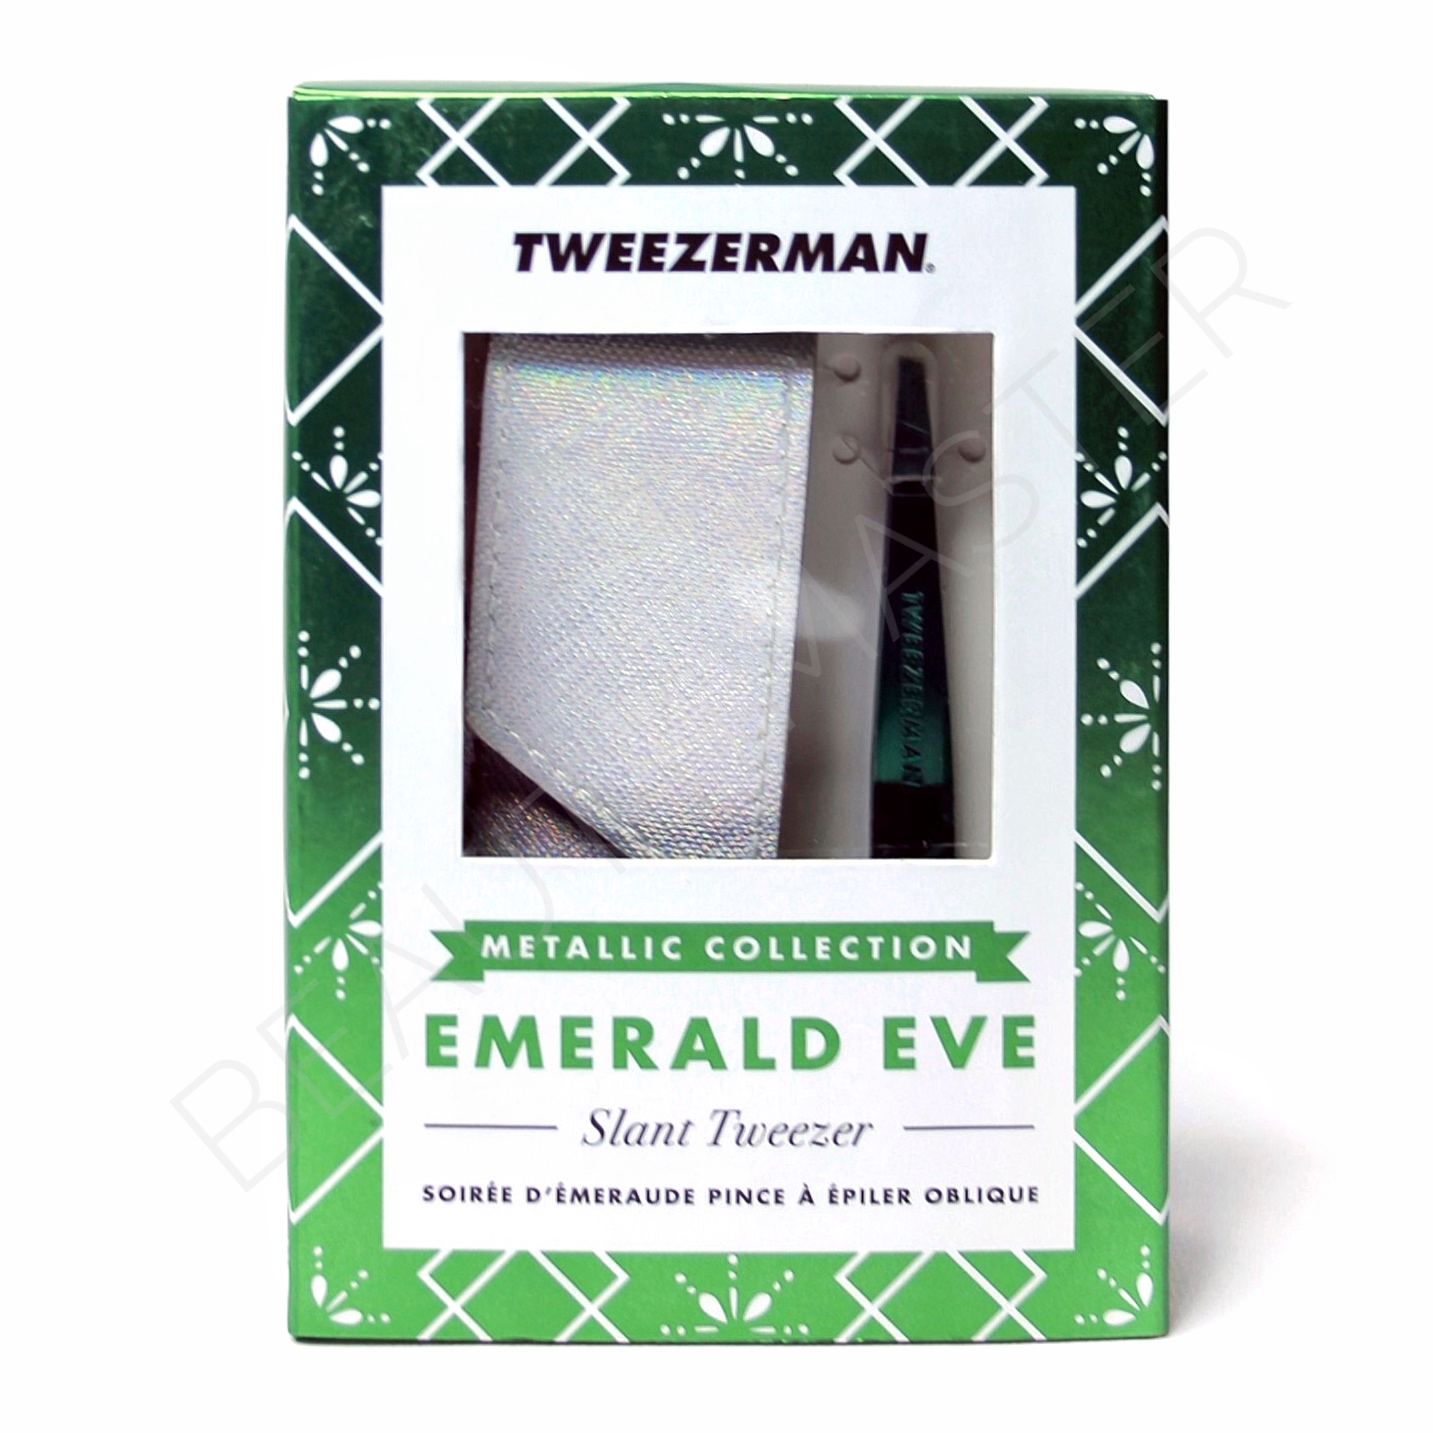 Tweezerman Пинцет для бровей зеленый с чехлом Emerald eve скошенный